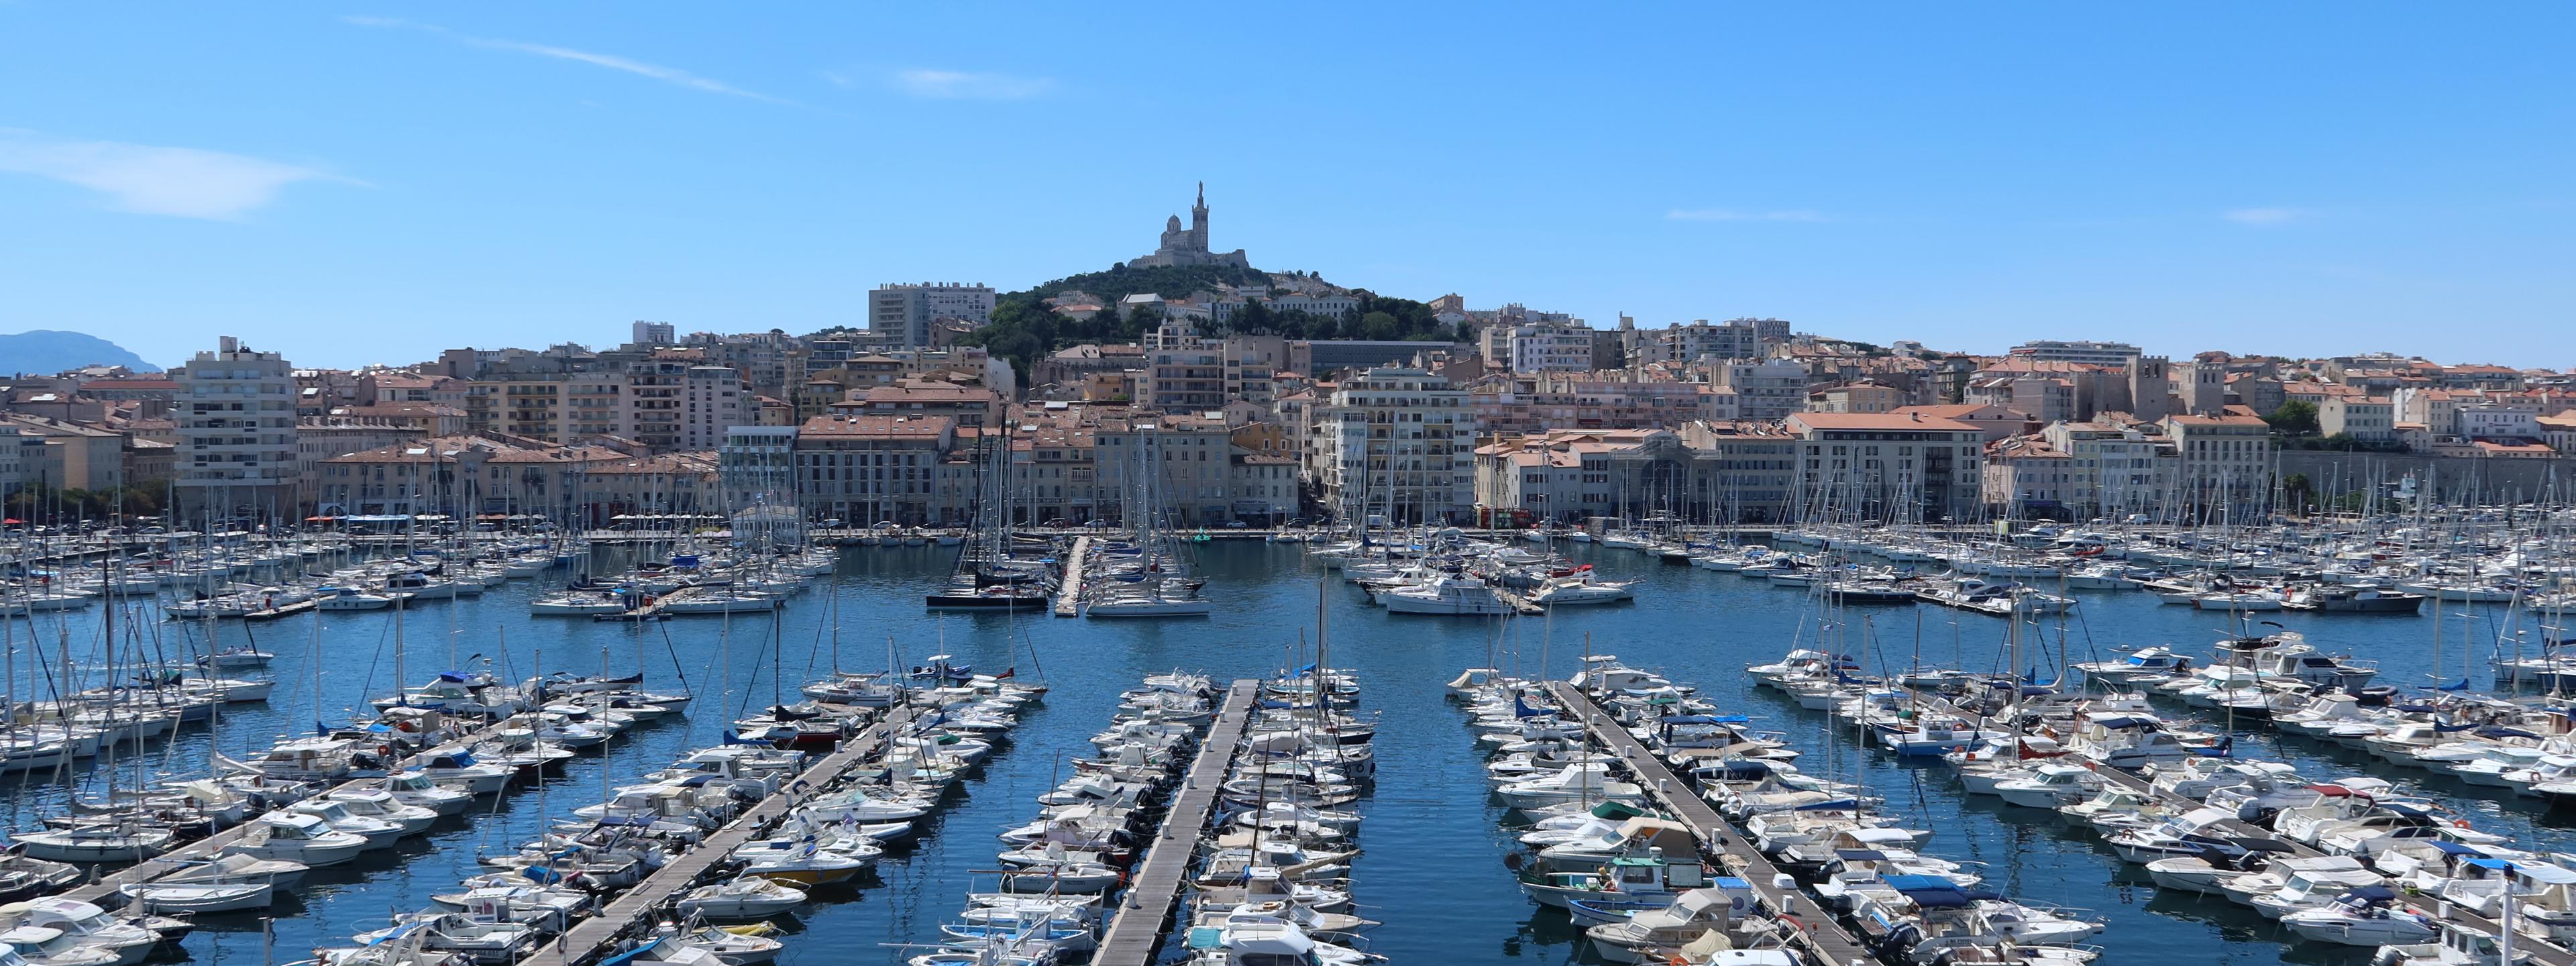 Viele Boote liegen im alten Hafen von Marseille, im Hintergrund sieht man die Kathedrale Notre-Dame de la Garde auf einem Hügel.